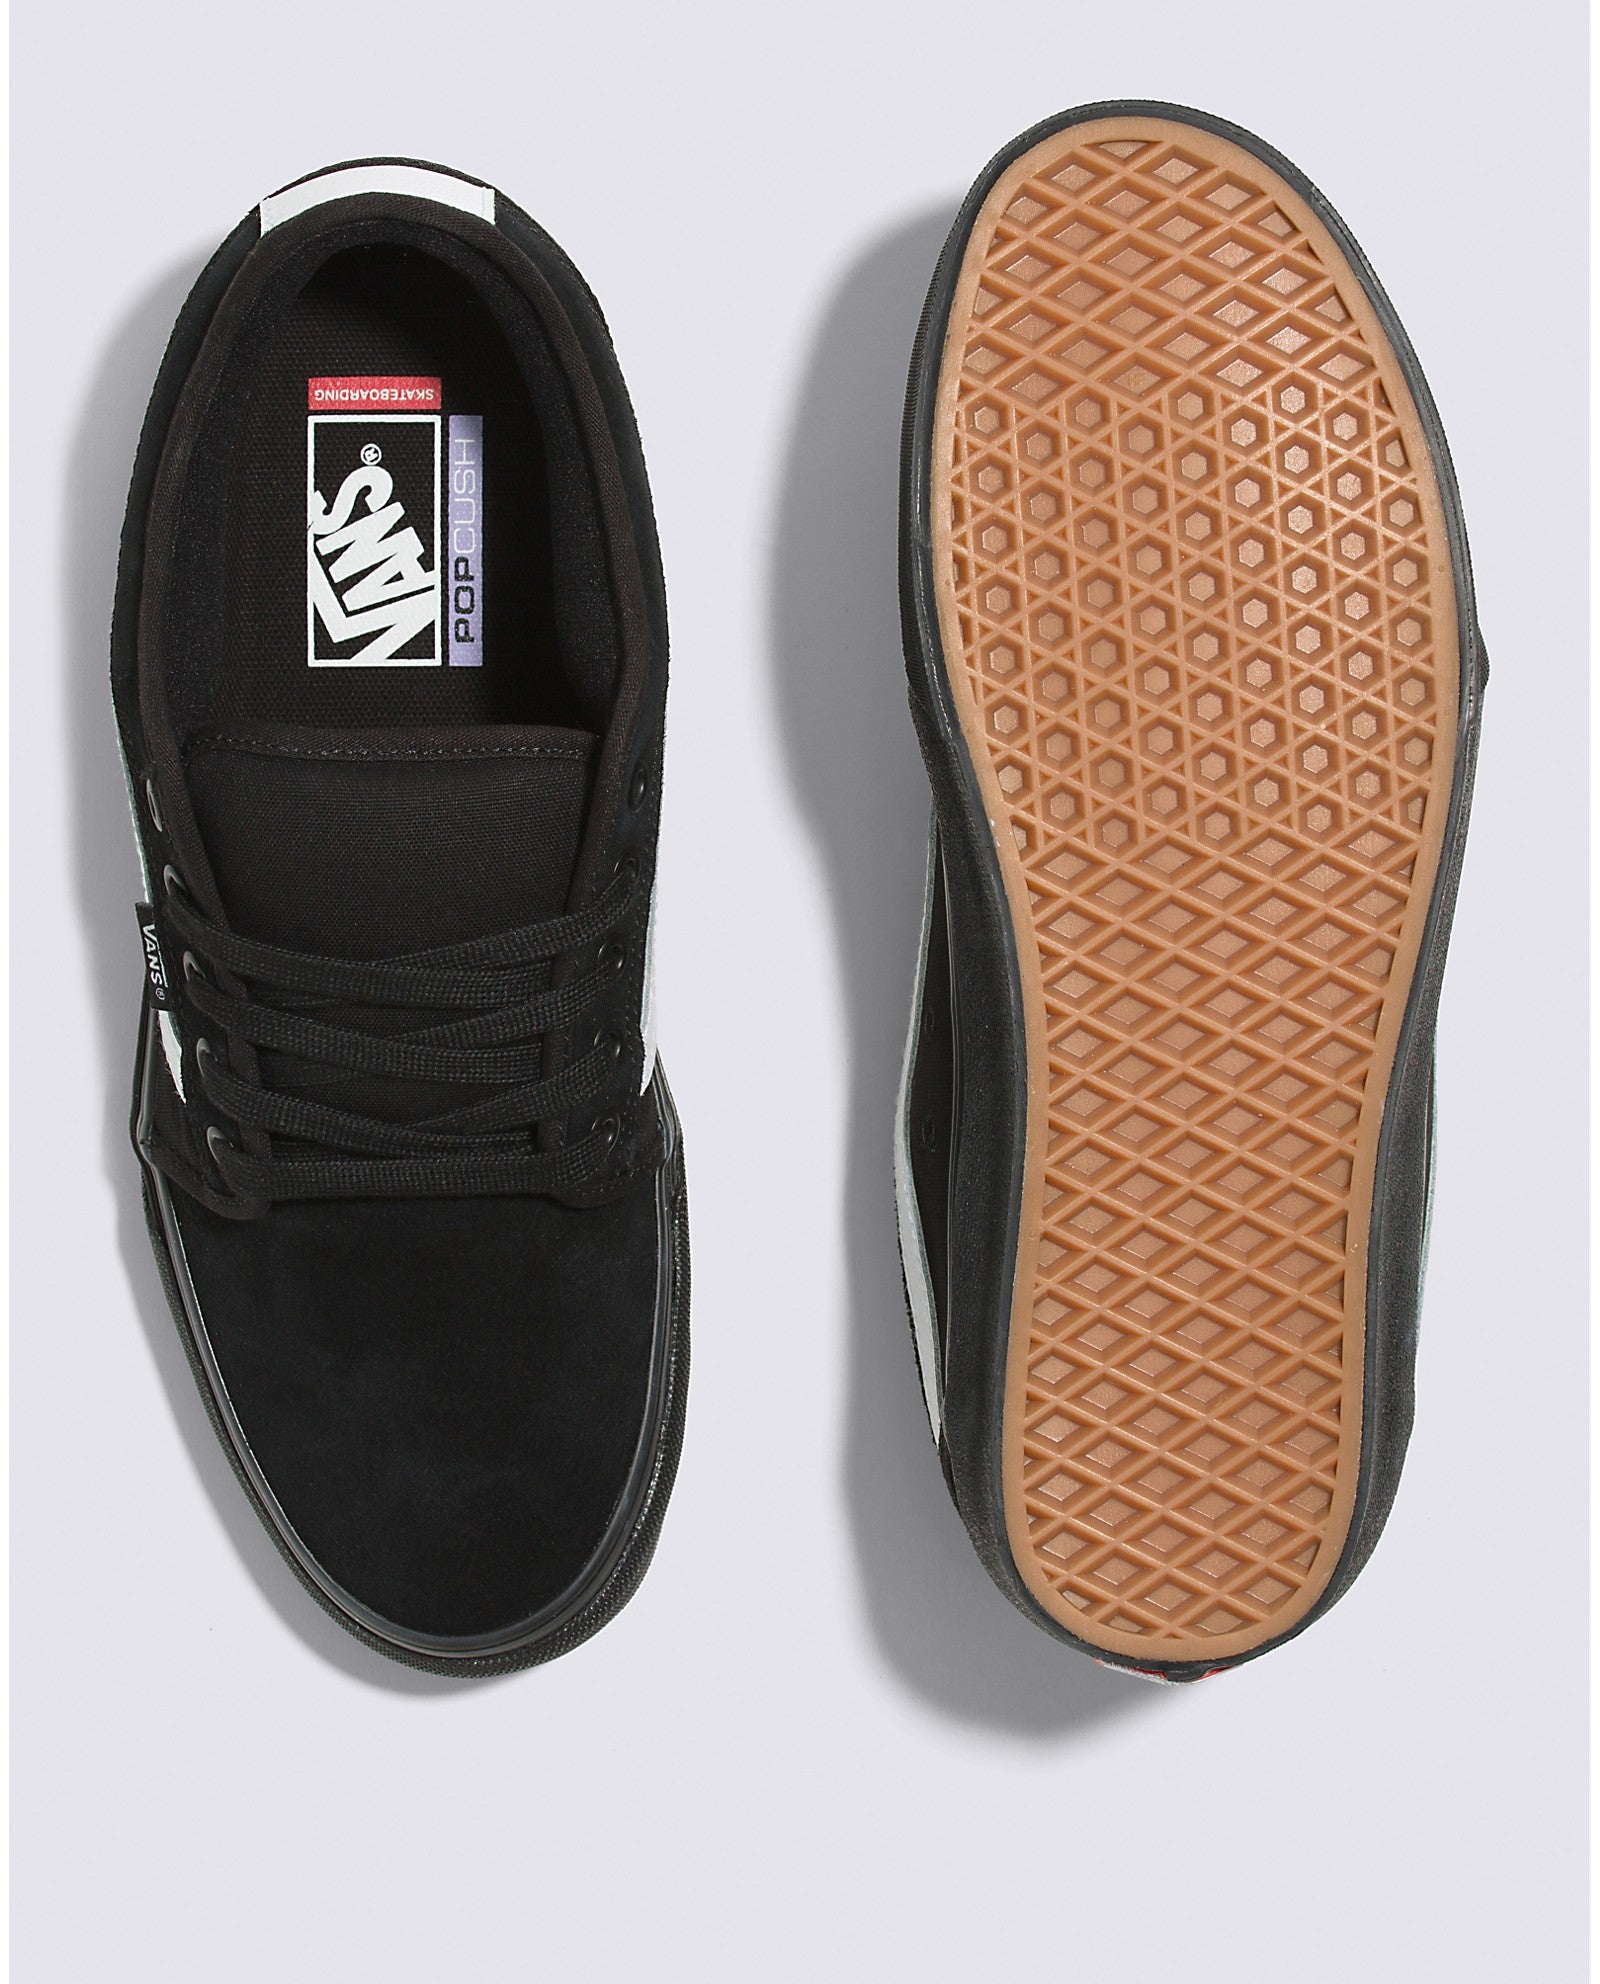 Black/Black/White Chukka Low Sidestripe Vans Skate Shoe Top/Bottom